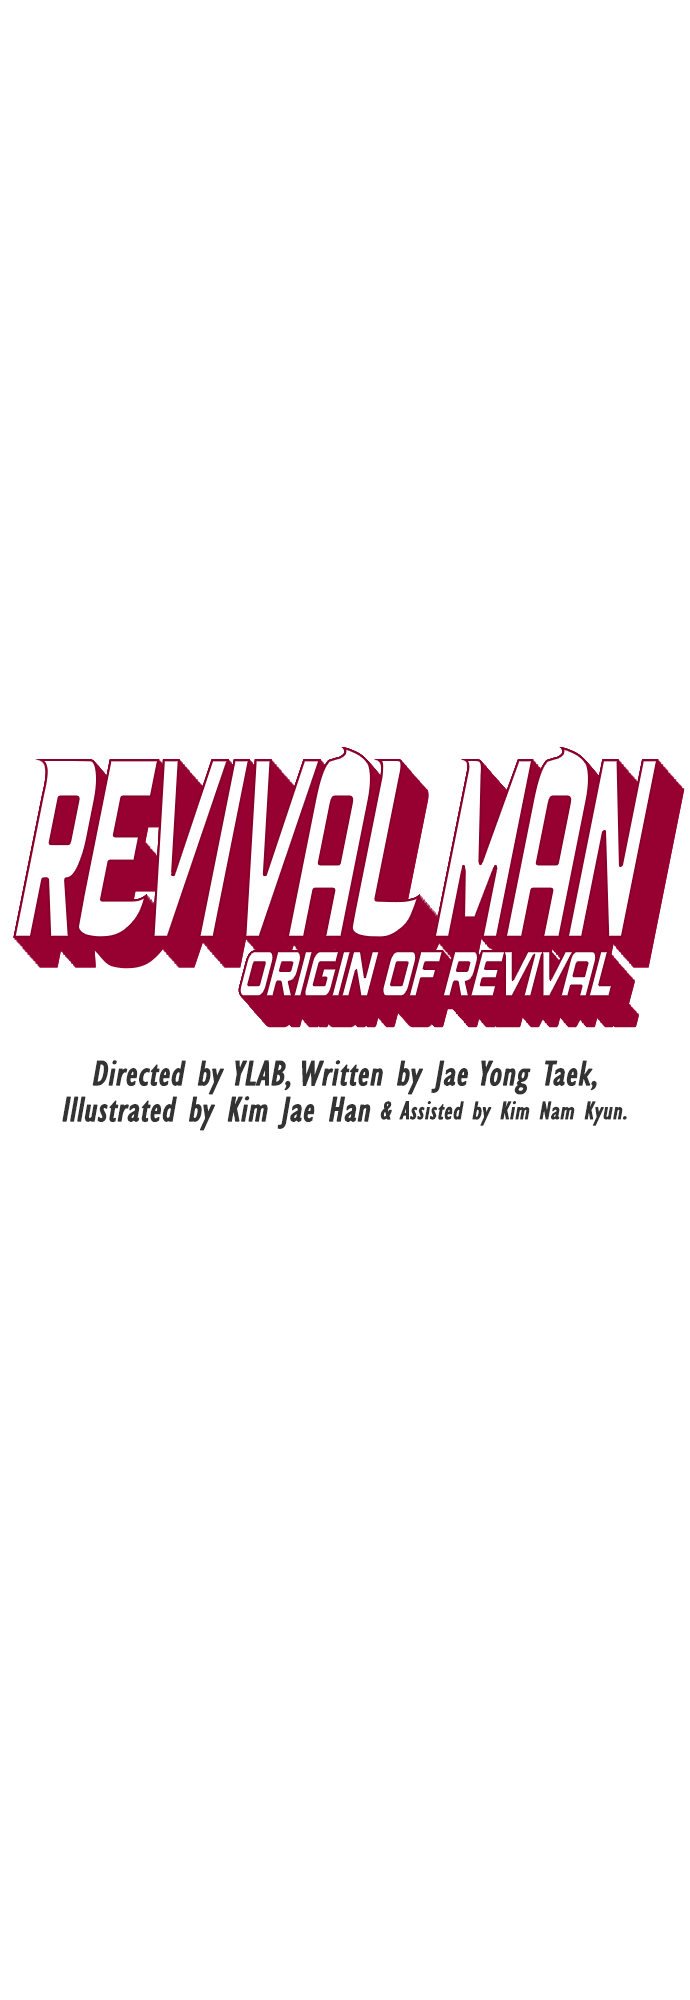 revival-man-chap-159-8